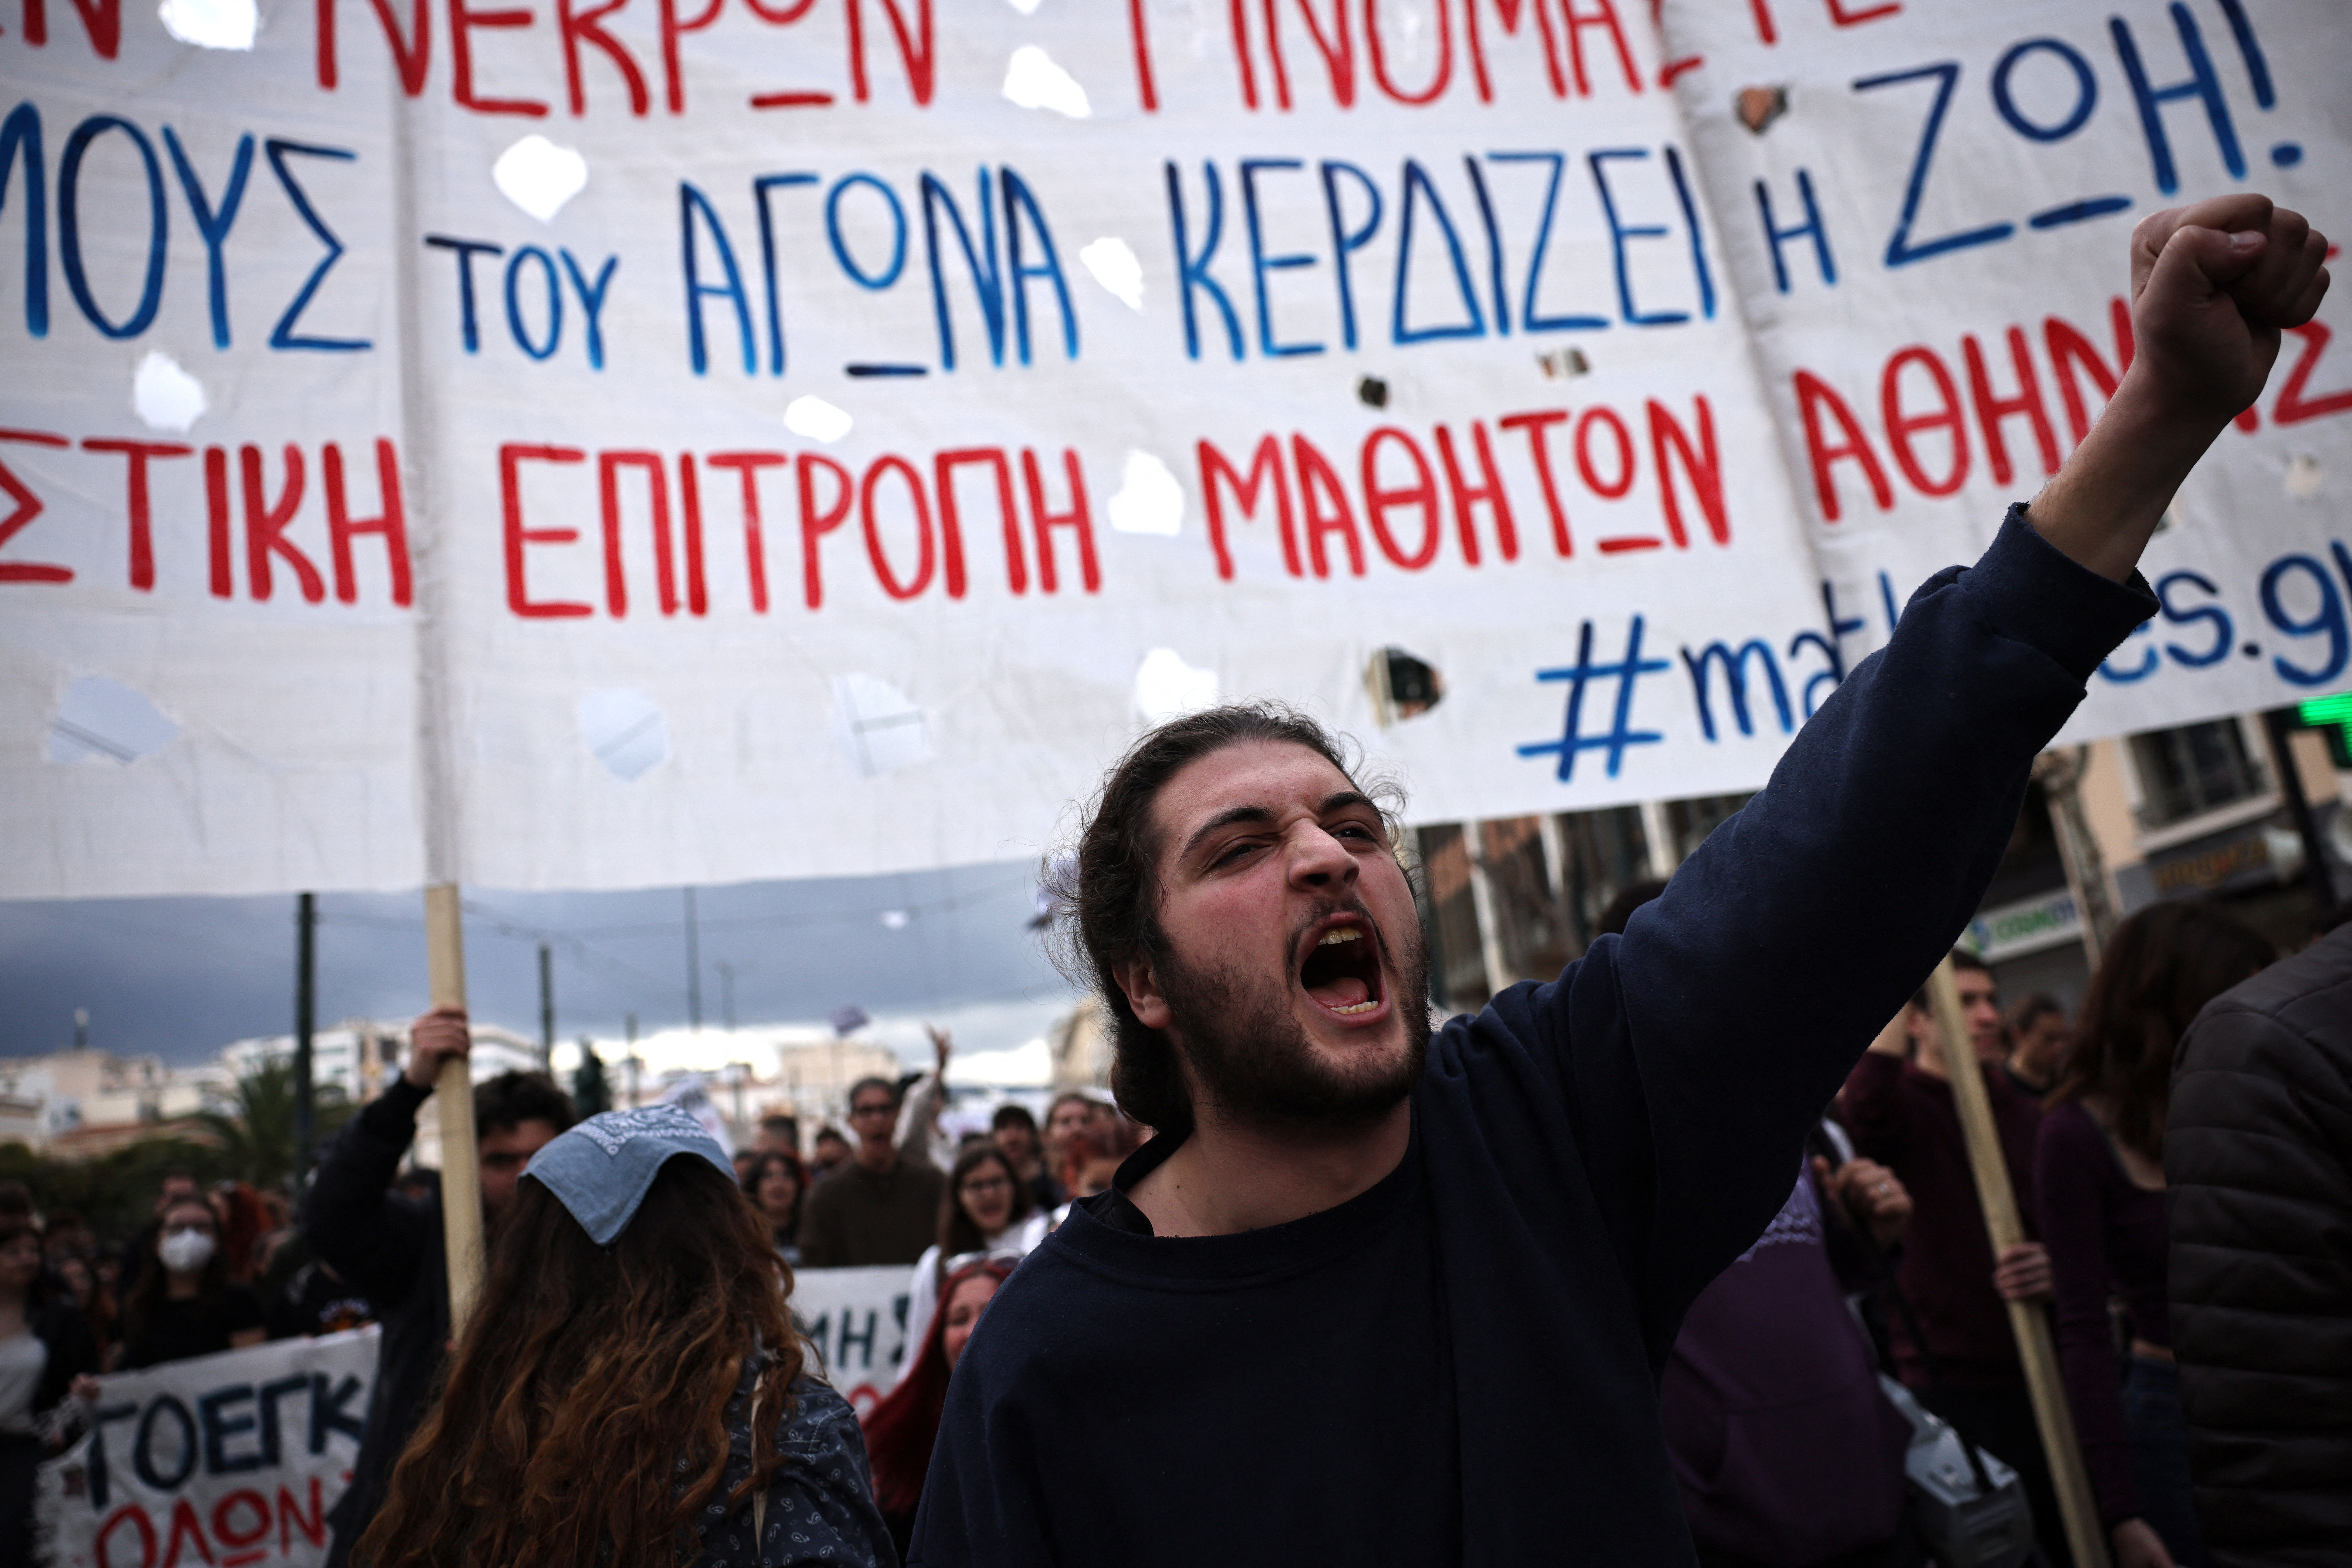 El accidente ferroviario del mes pasado desató una ola de multitudinarias protestas contra el Gobierno griego (REUTERS/Stoyan Nenov)